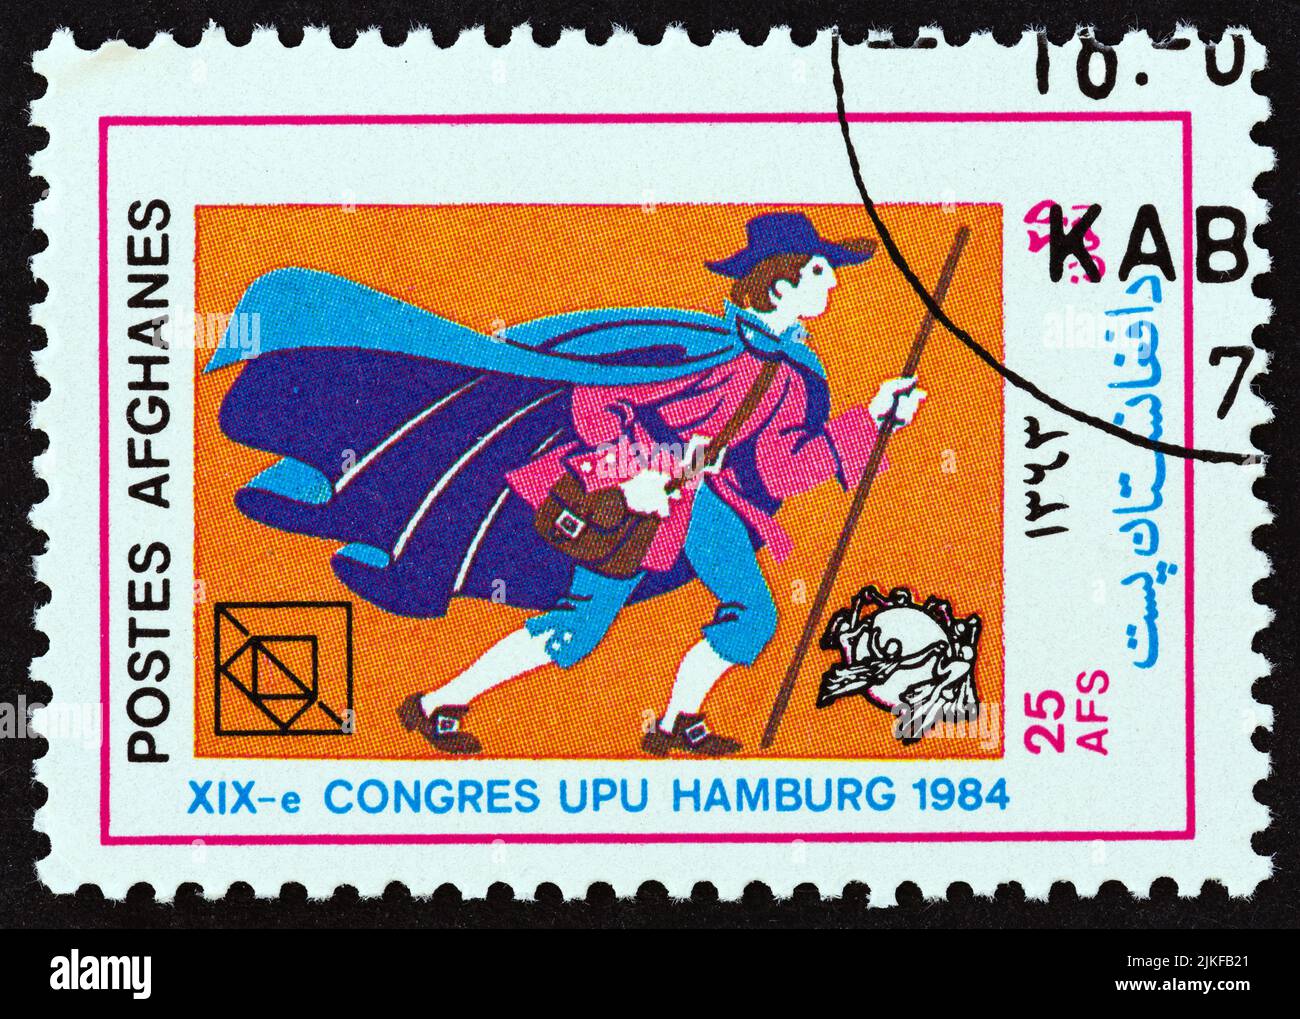 AFGHANISTAN - VERS 1984 : un timbre imprimé en Afghanistan de l'Union des États-Unis de 19th Congress, Hambourg, numéro montre postal Messenger, vers 1984. Banque D'Images